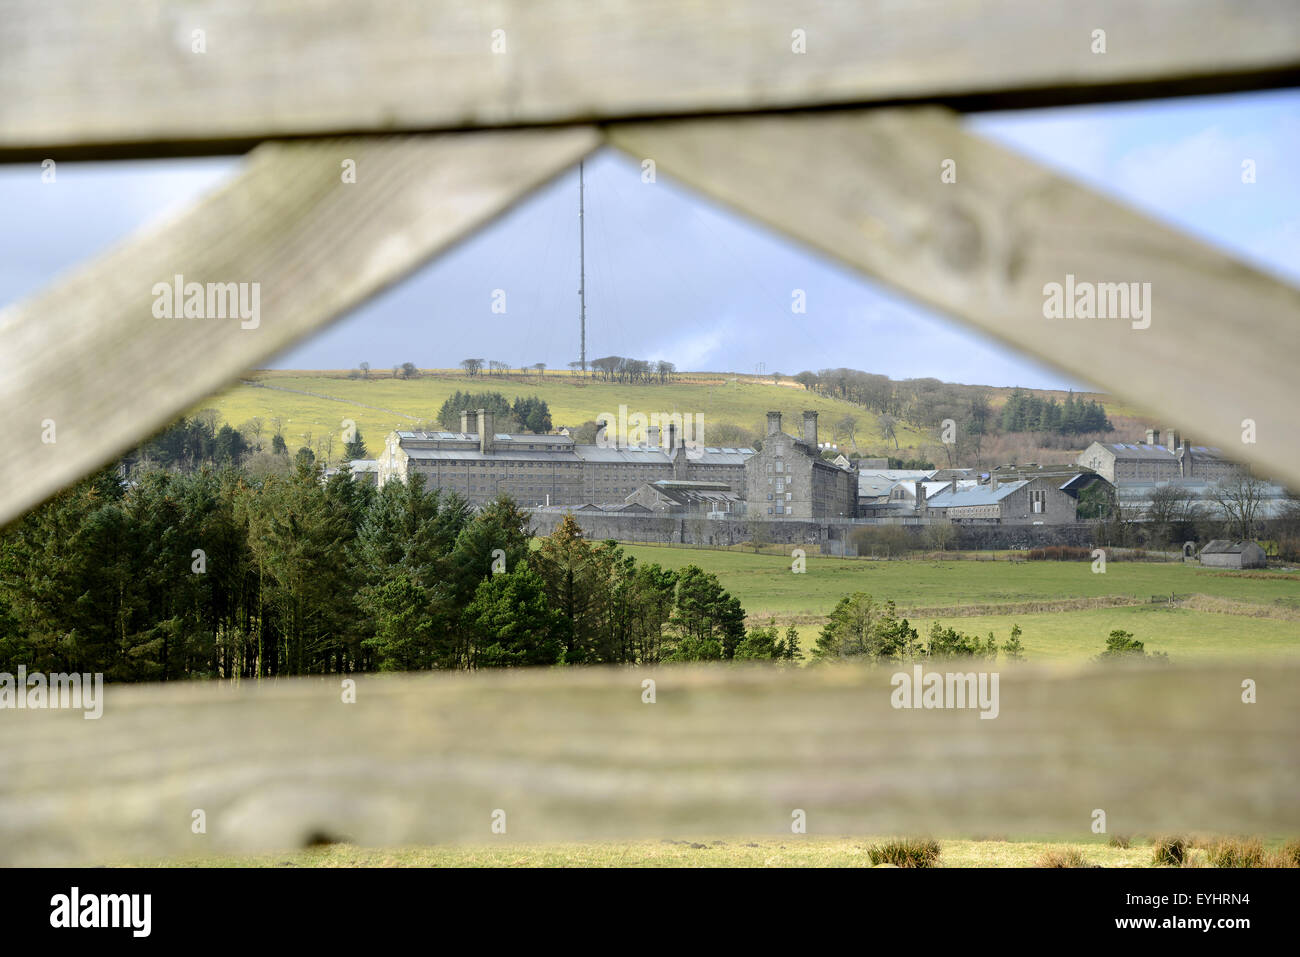 'Dartmoor Prison' HM Prison Dartmoor, Princetown, Dartmoor, Devon, England, UK Stock Photo